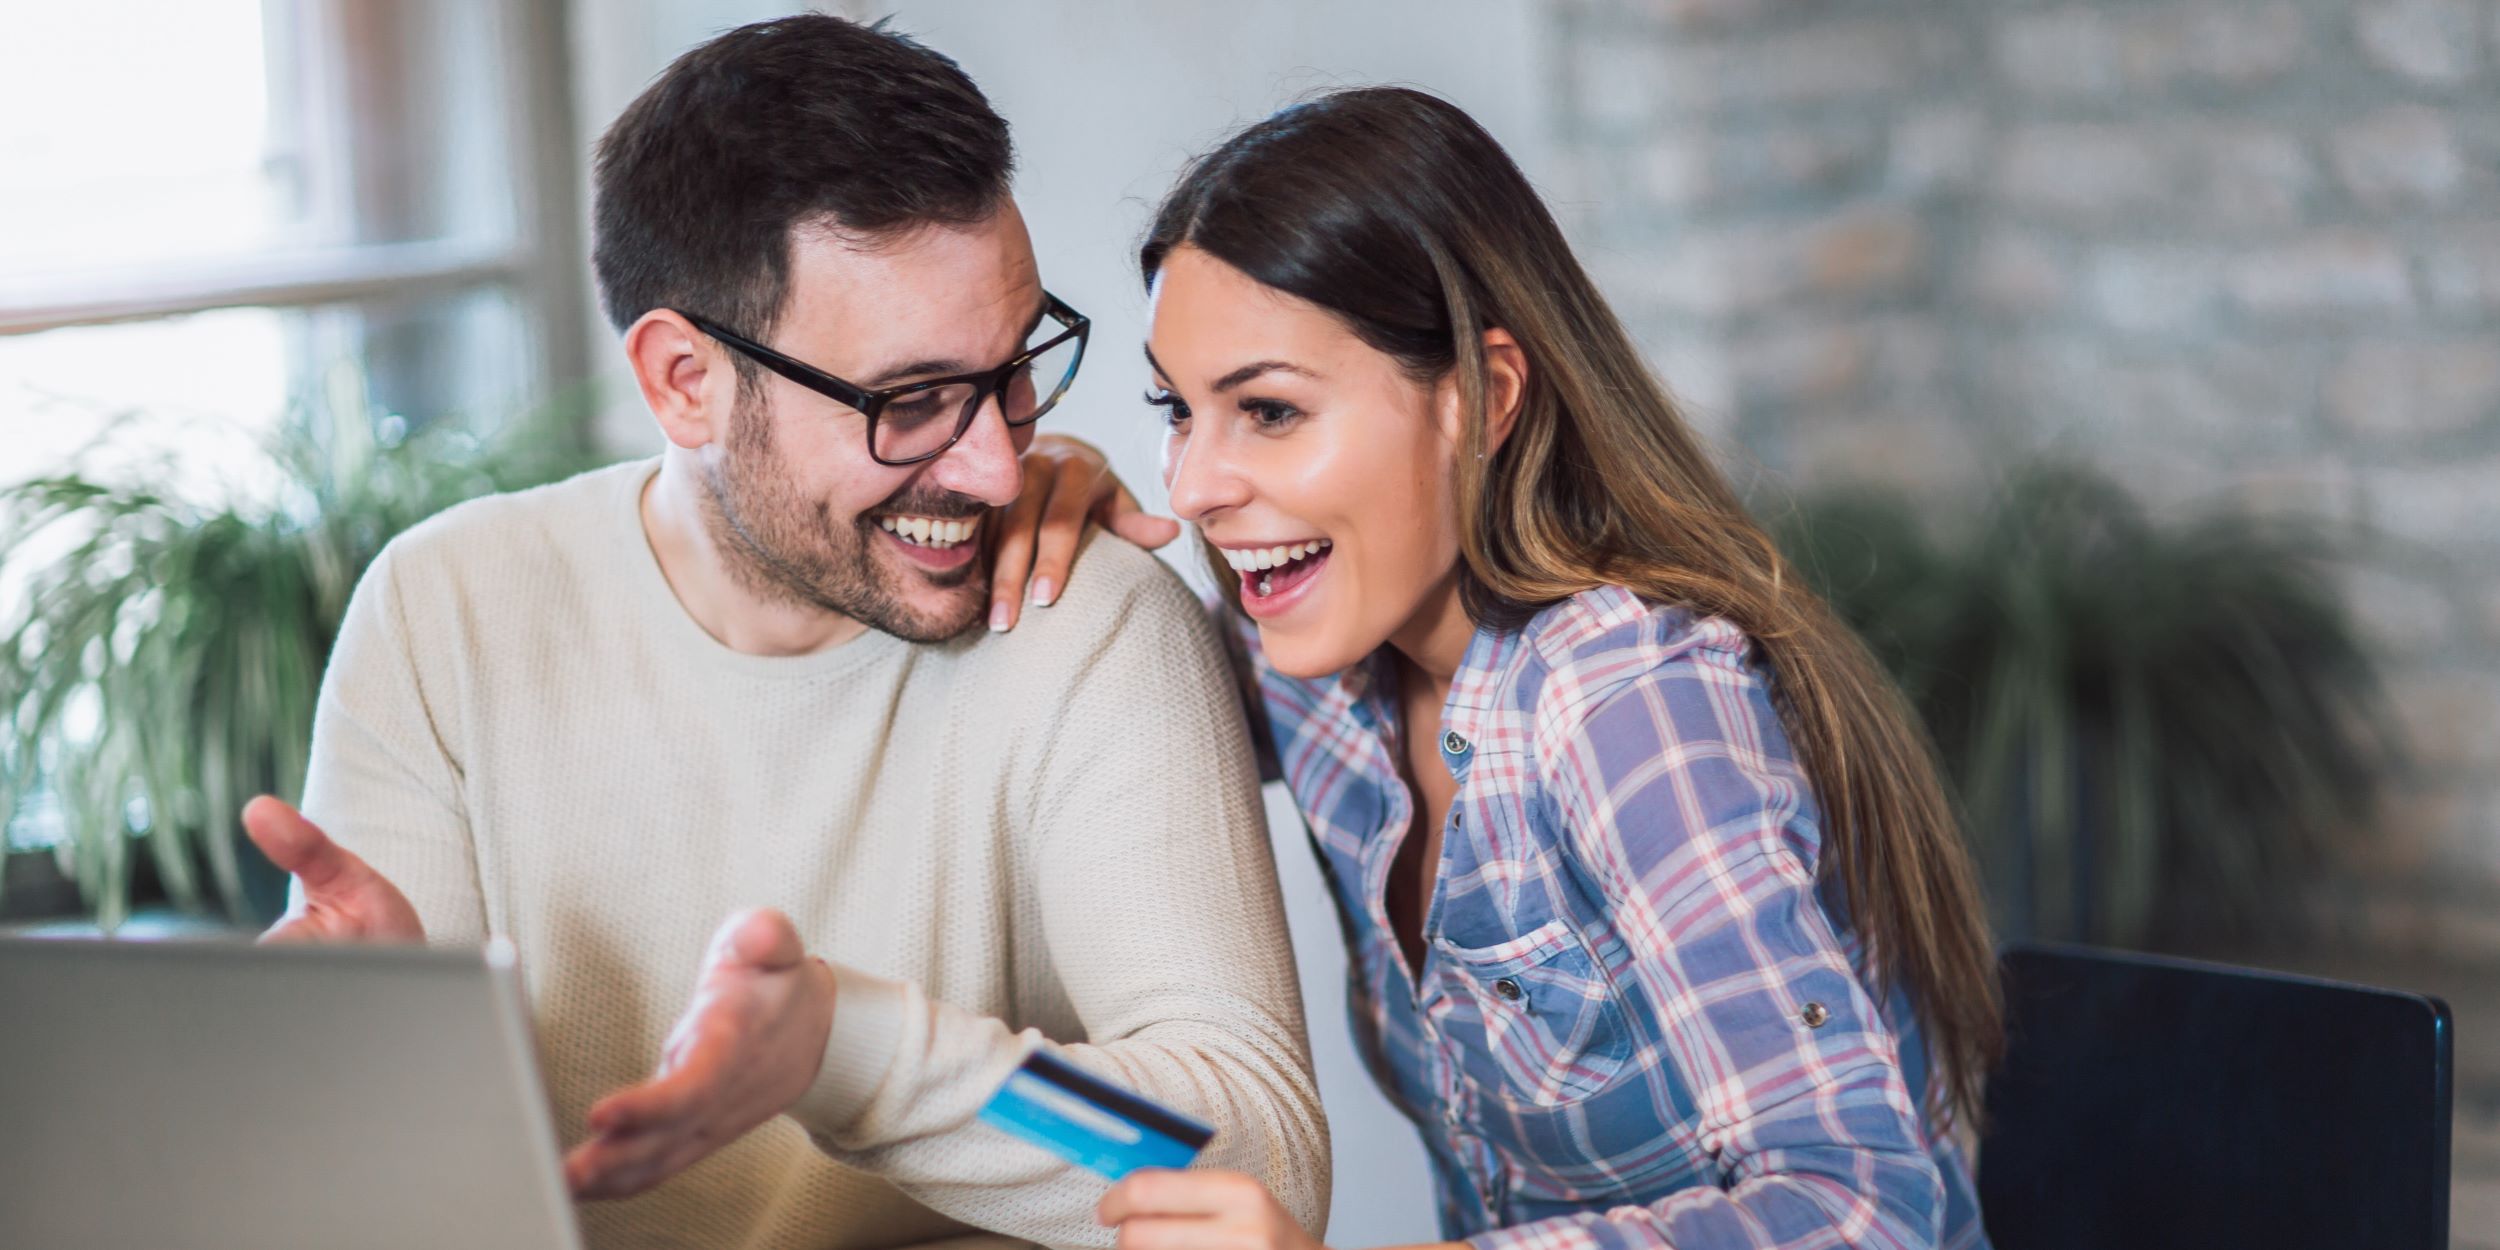 Beneficios de invertir en departamentos o casas. Una pareja adulta joven está viendo opciones en internet para comprar una casa o departamento.